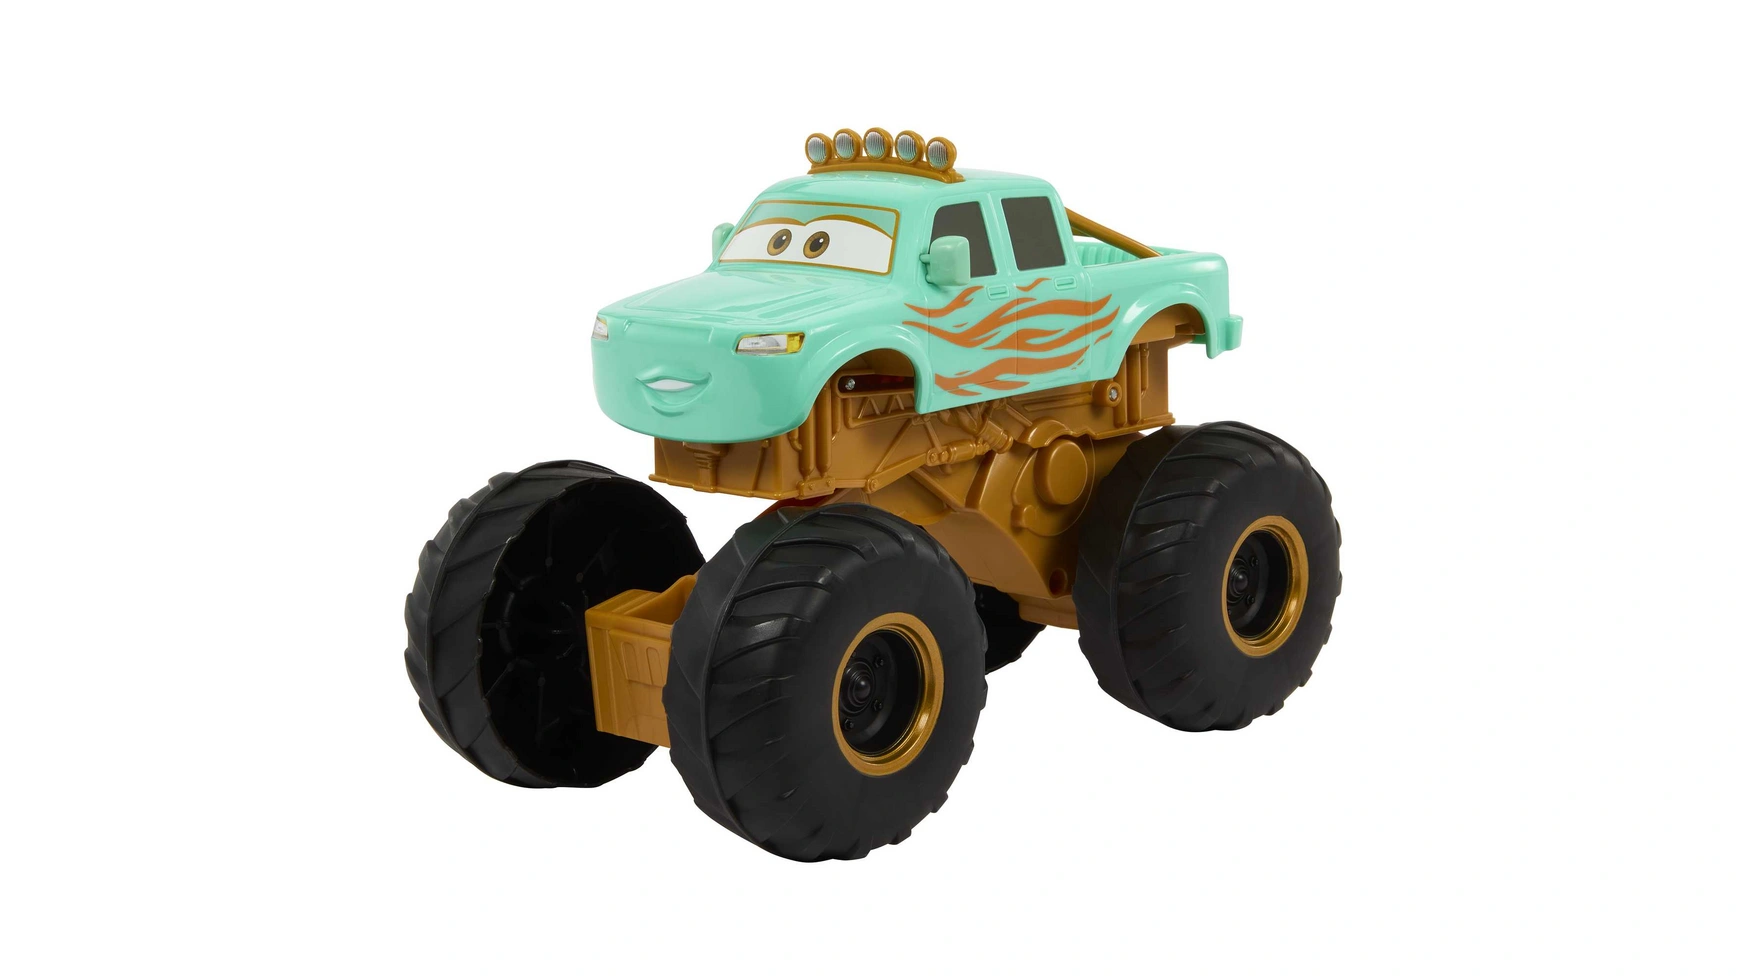 Disney Pixar Cars Hero с участием Айви Mattel Disney Cars Fahrzeuge грузовик монстр с выпускной платформой бегемот